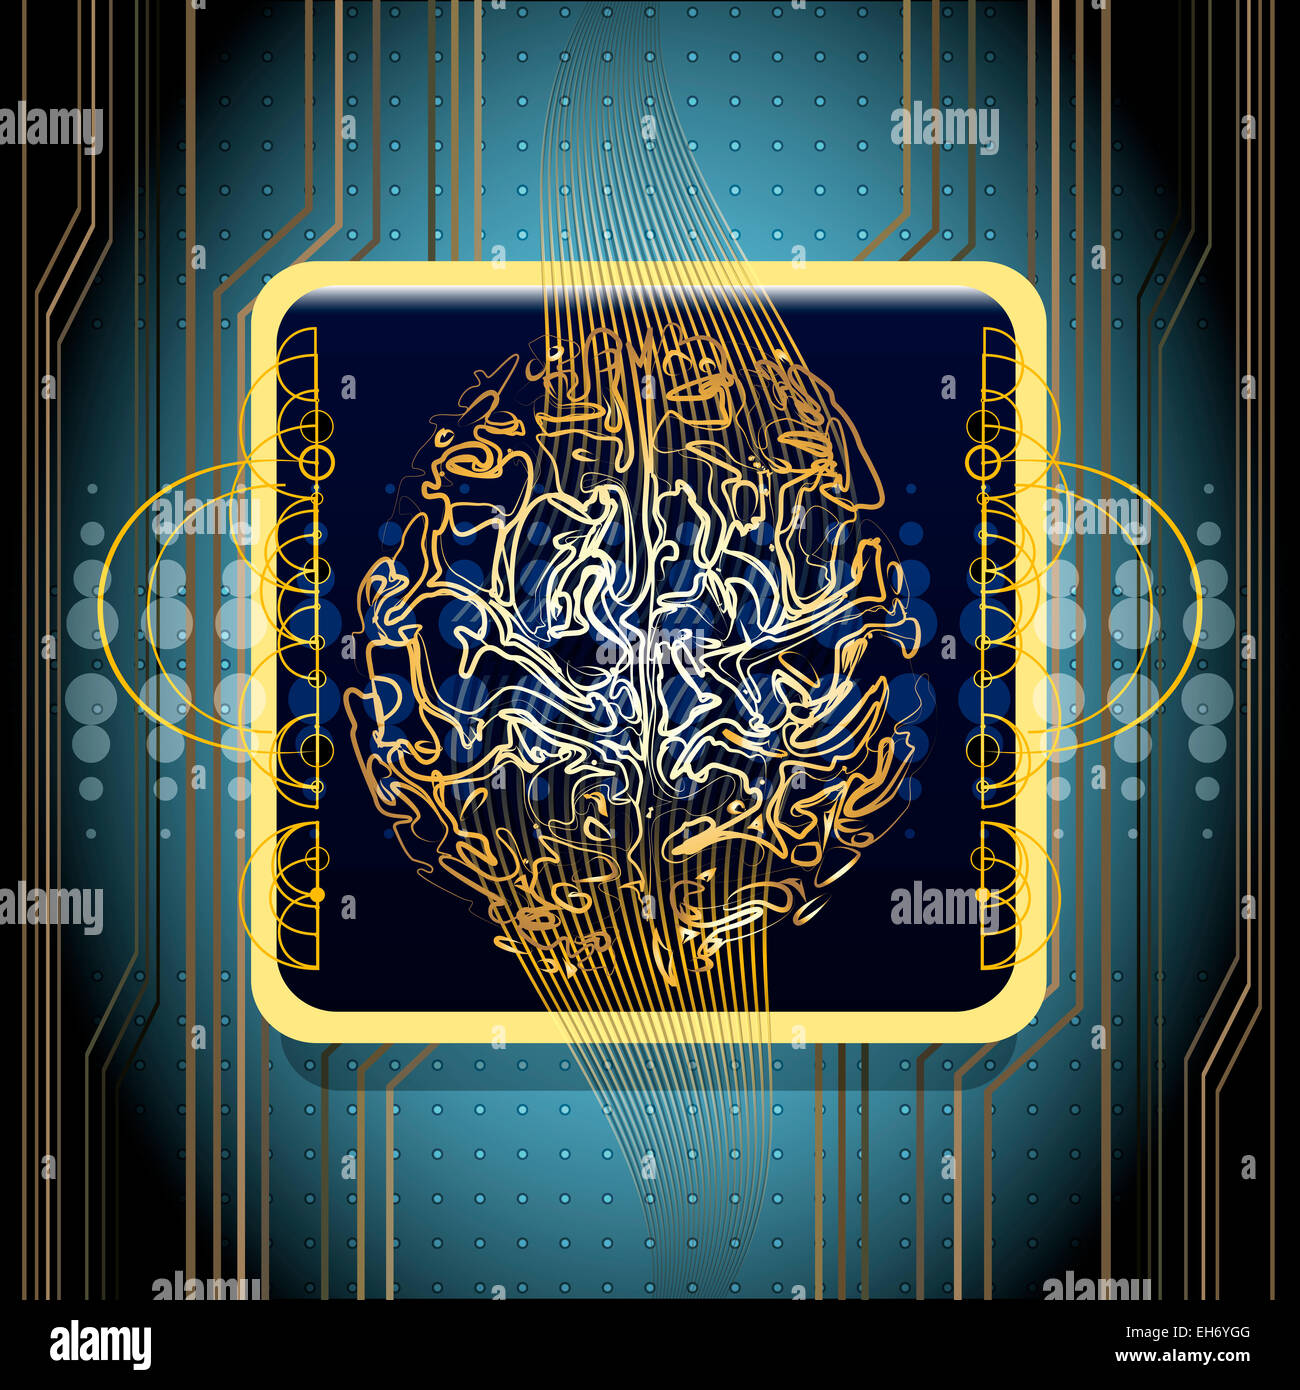 Illustrazione con unità centrale di elaborazione realizzata in forma di cervelli umani contro abstract sfondo tecnologico Foto Stock